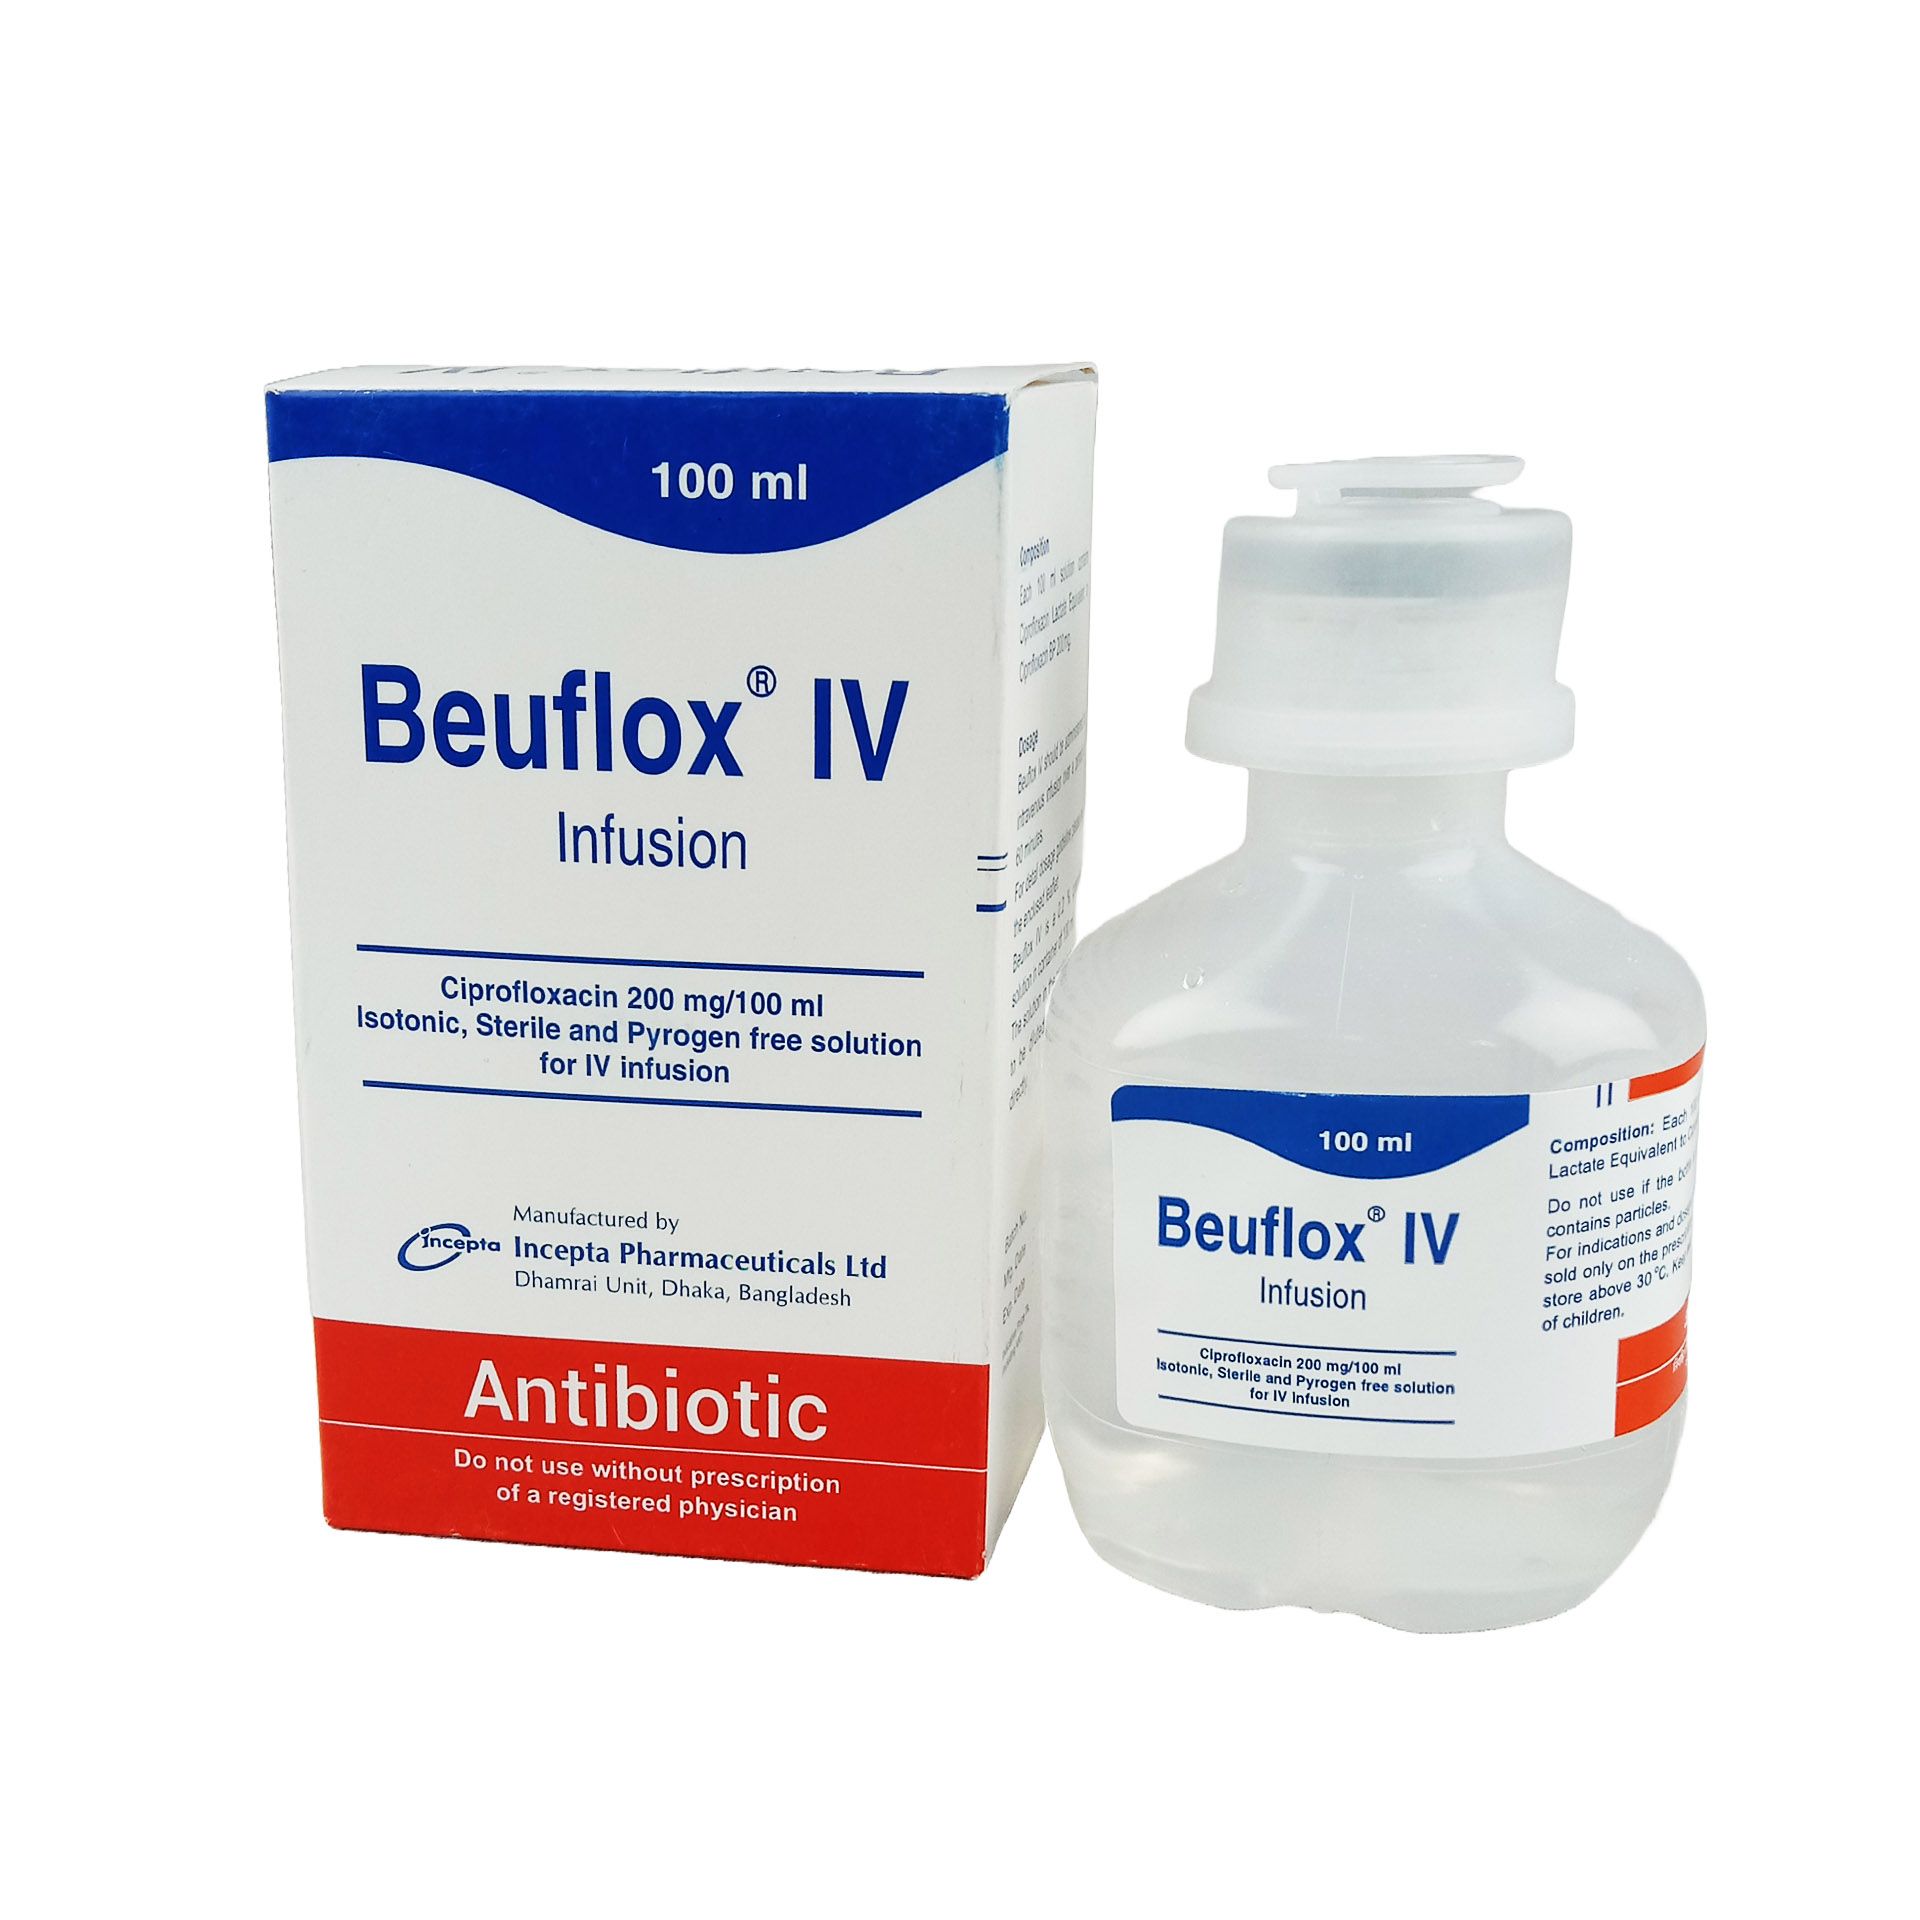 Beuflox IV 200mg/100ml Infusion